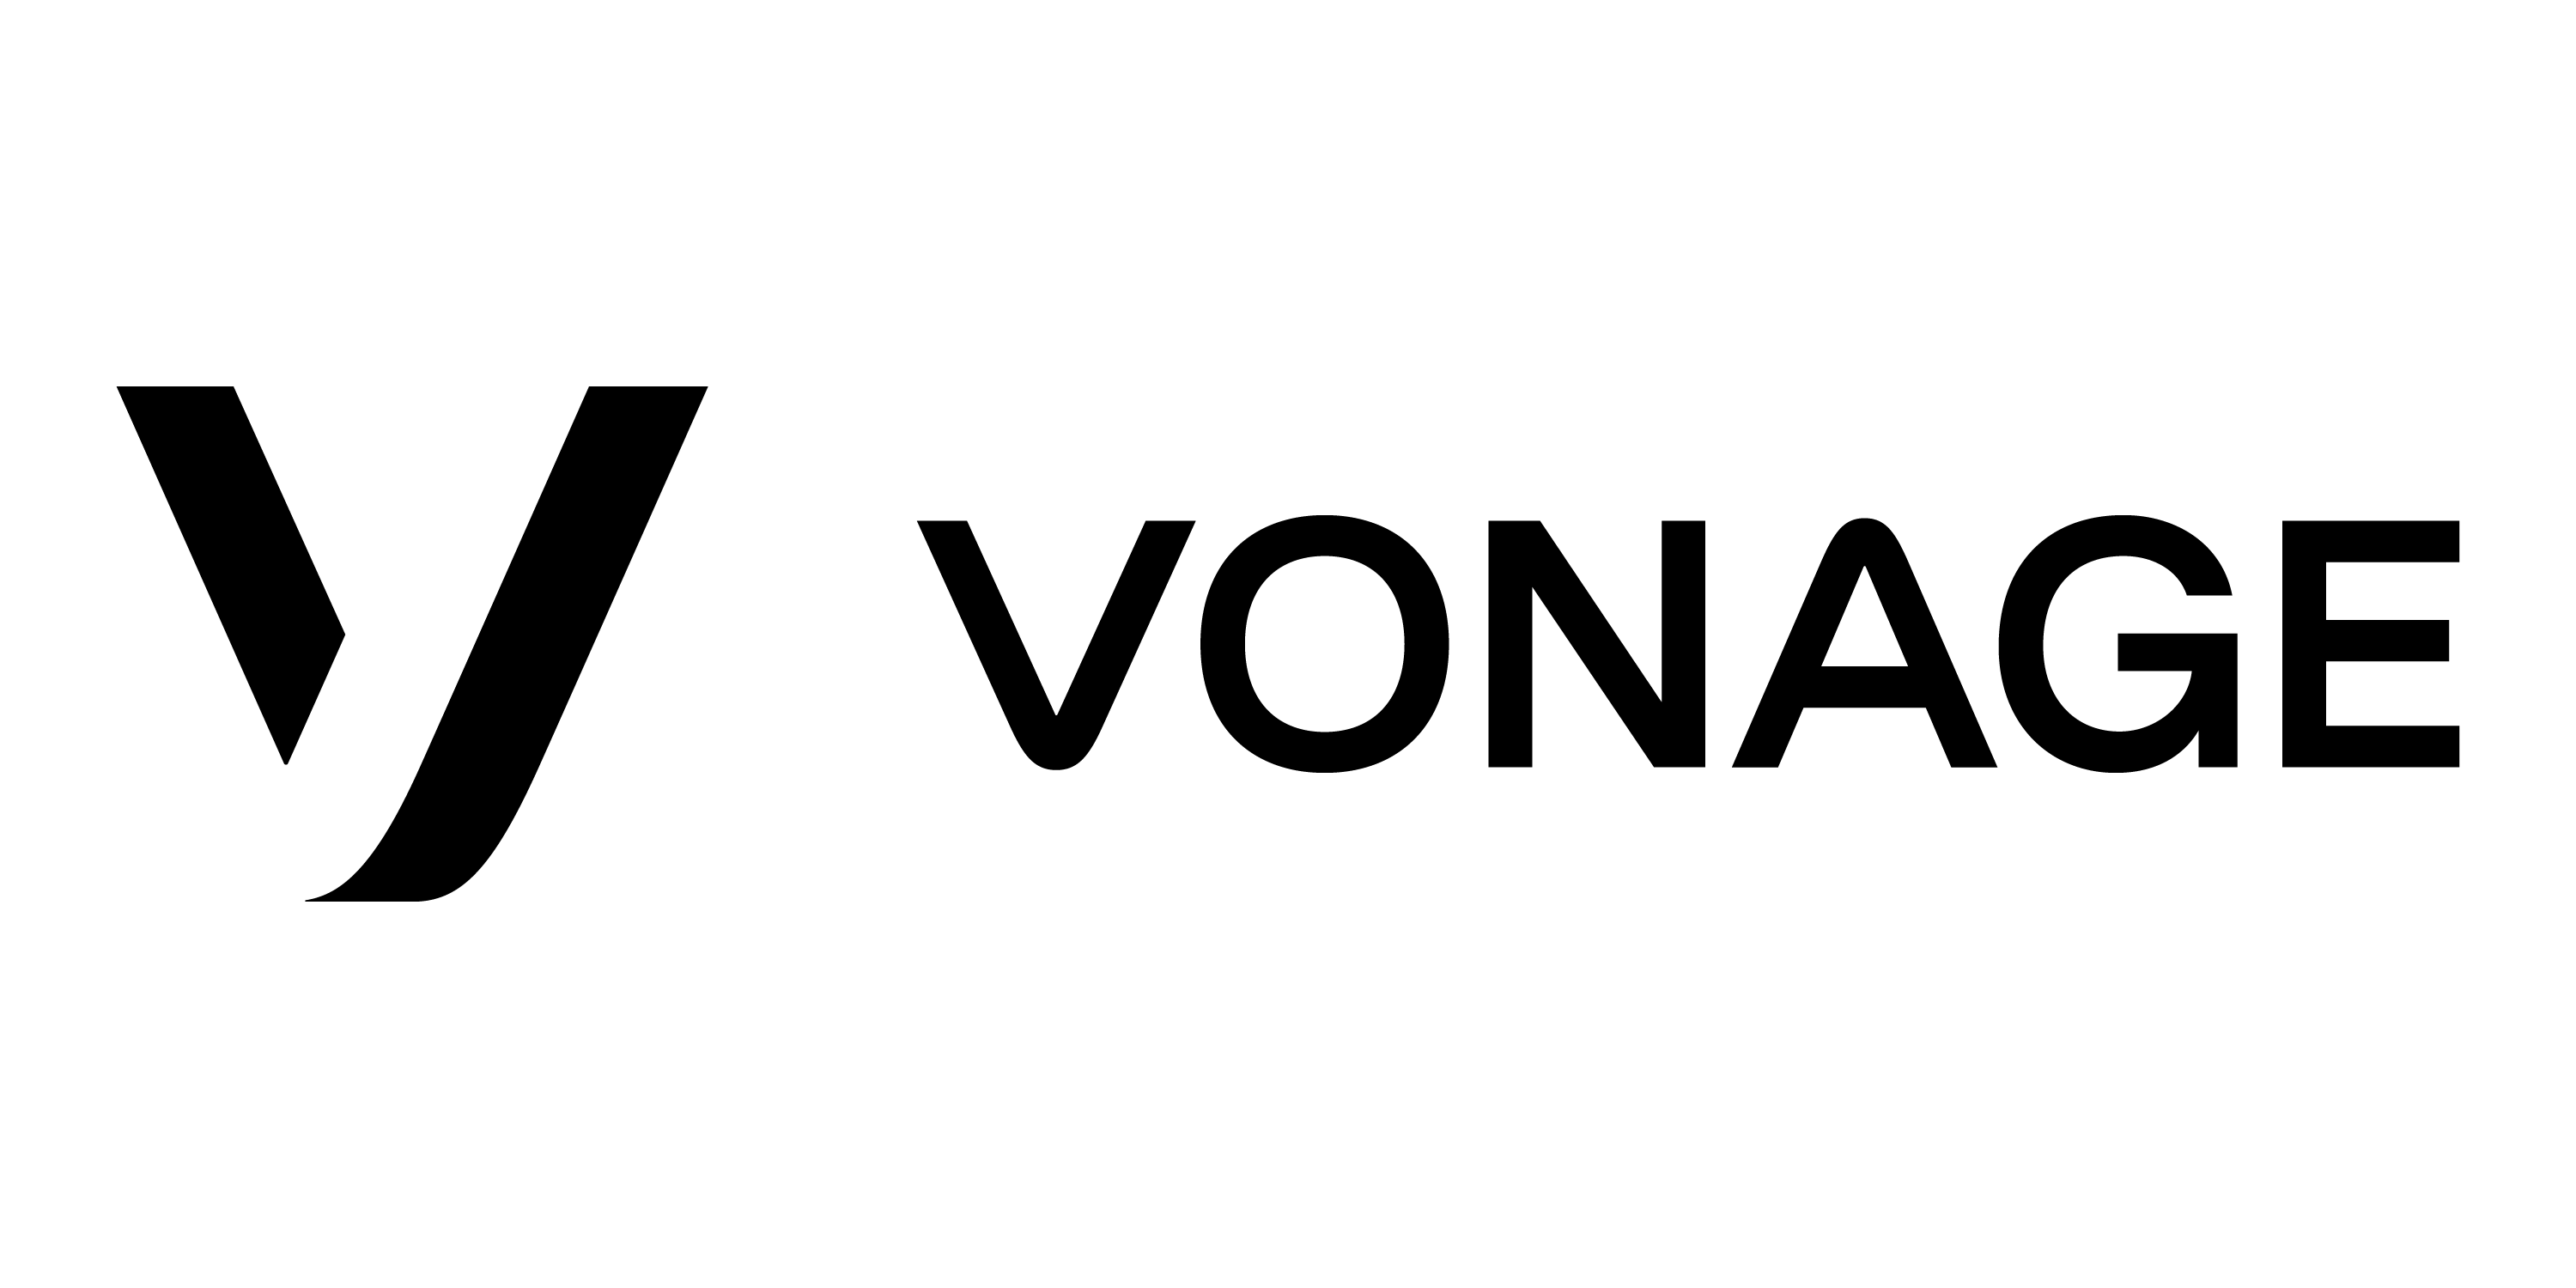 Windows Company Logo